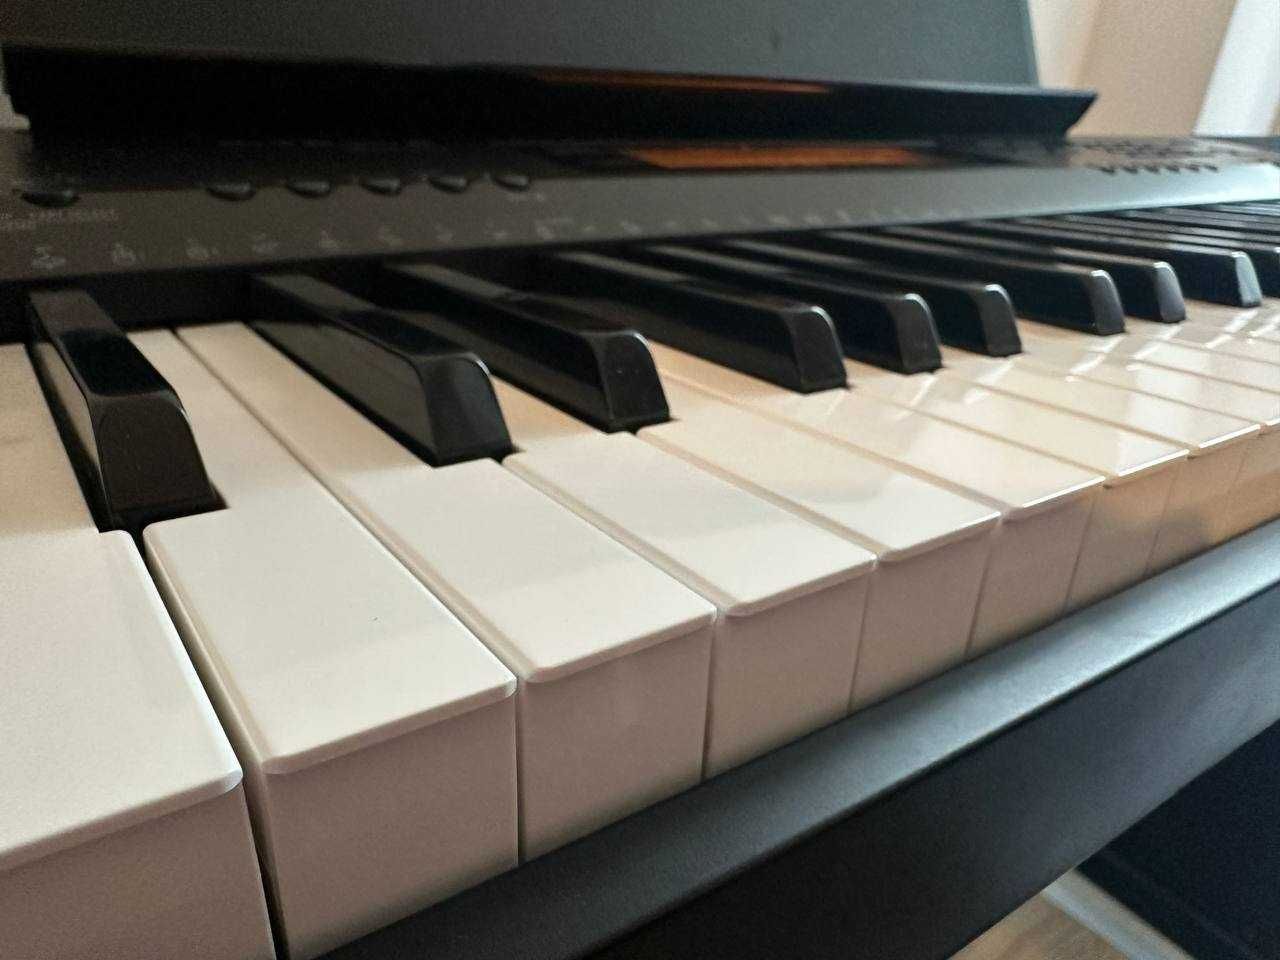 Zestaw Pianino cyfrowe wysokiej jakości Casio CDP-220R + statyw.